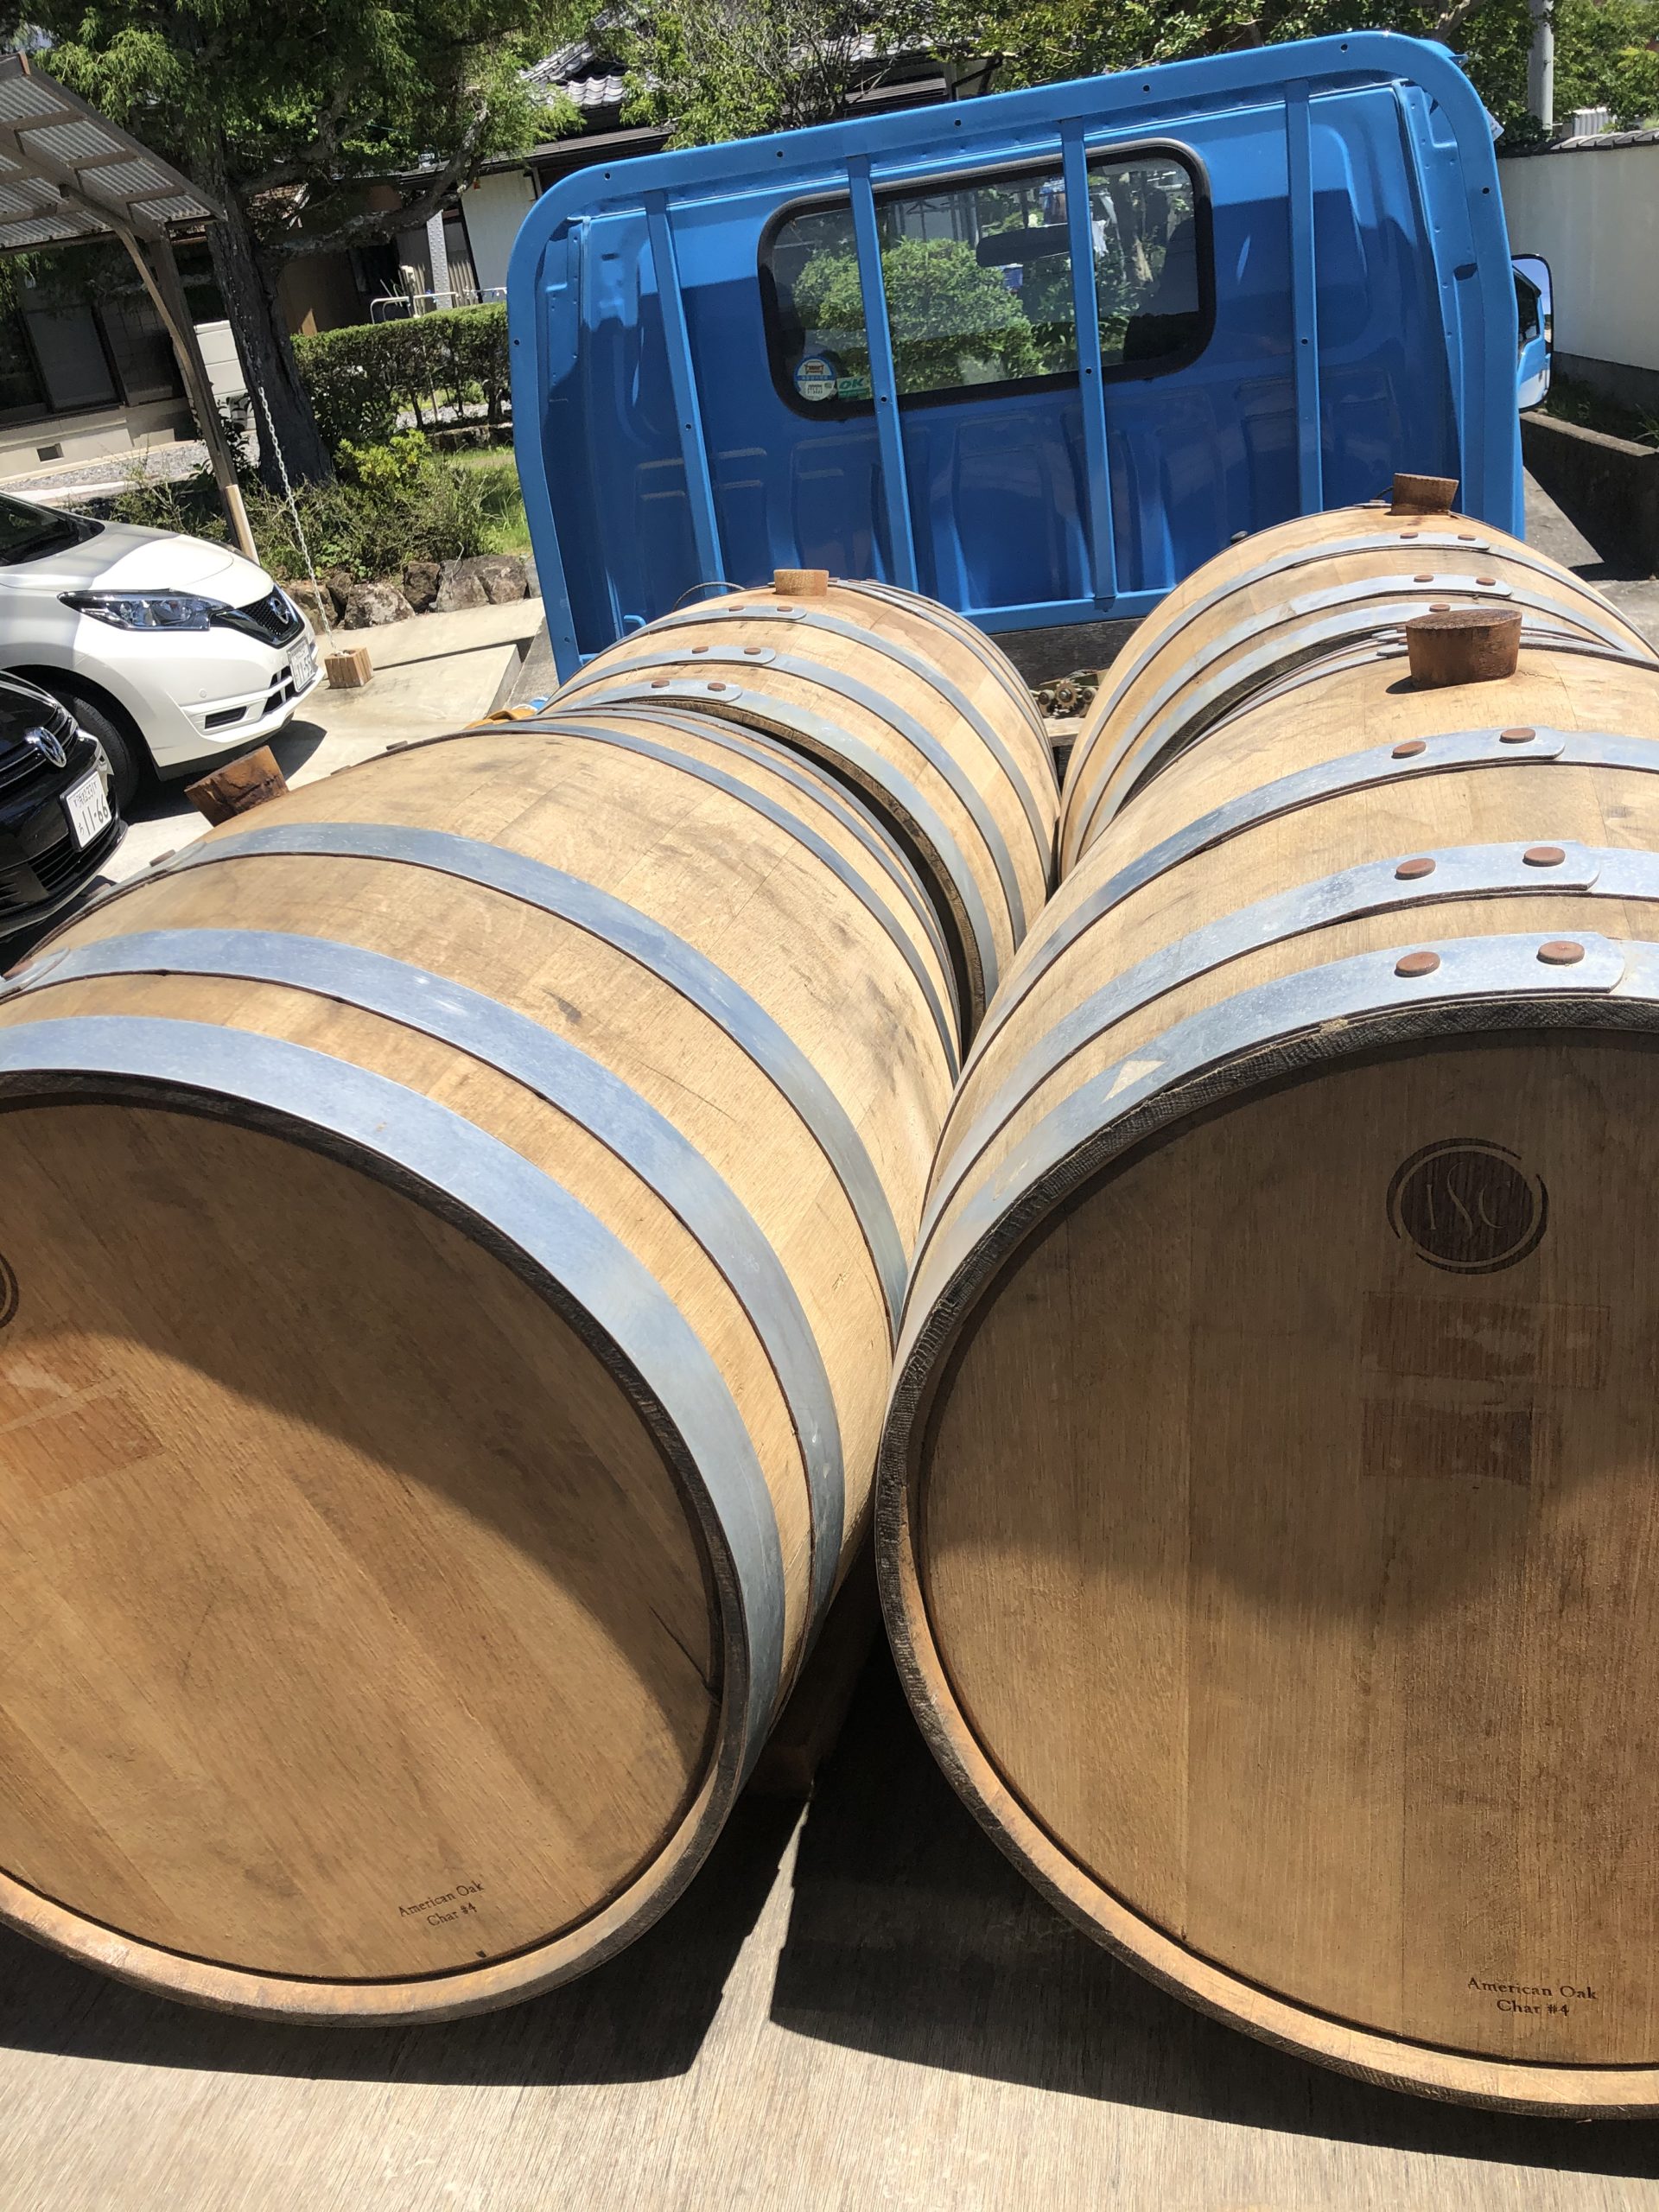 oak barrel ～アメリカンオーク樽～ – 静岡の地酒セレクトブランド